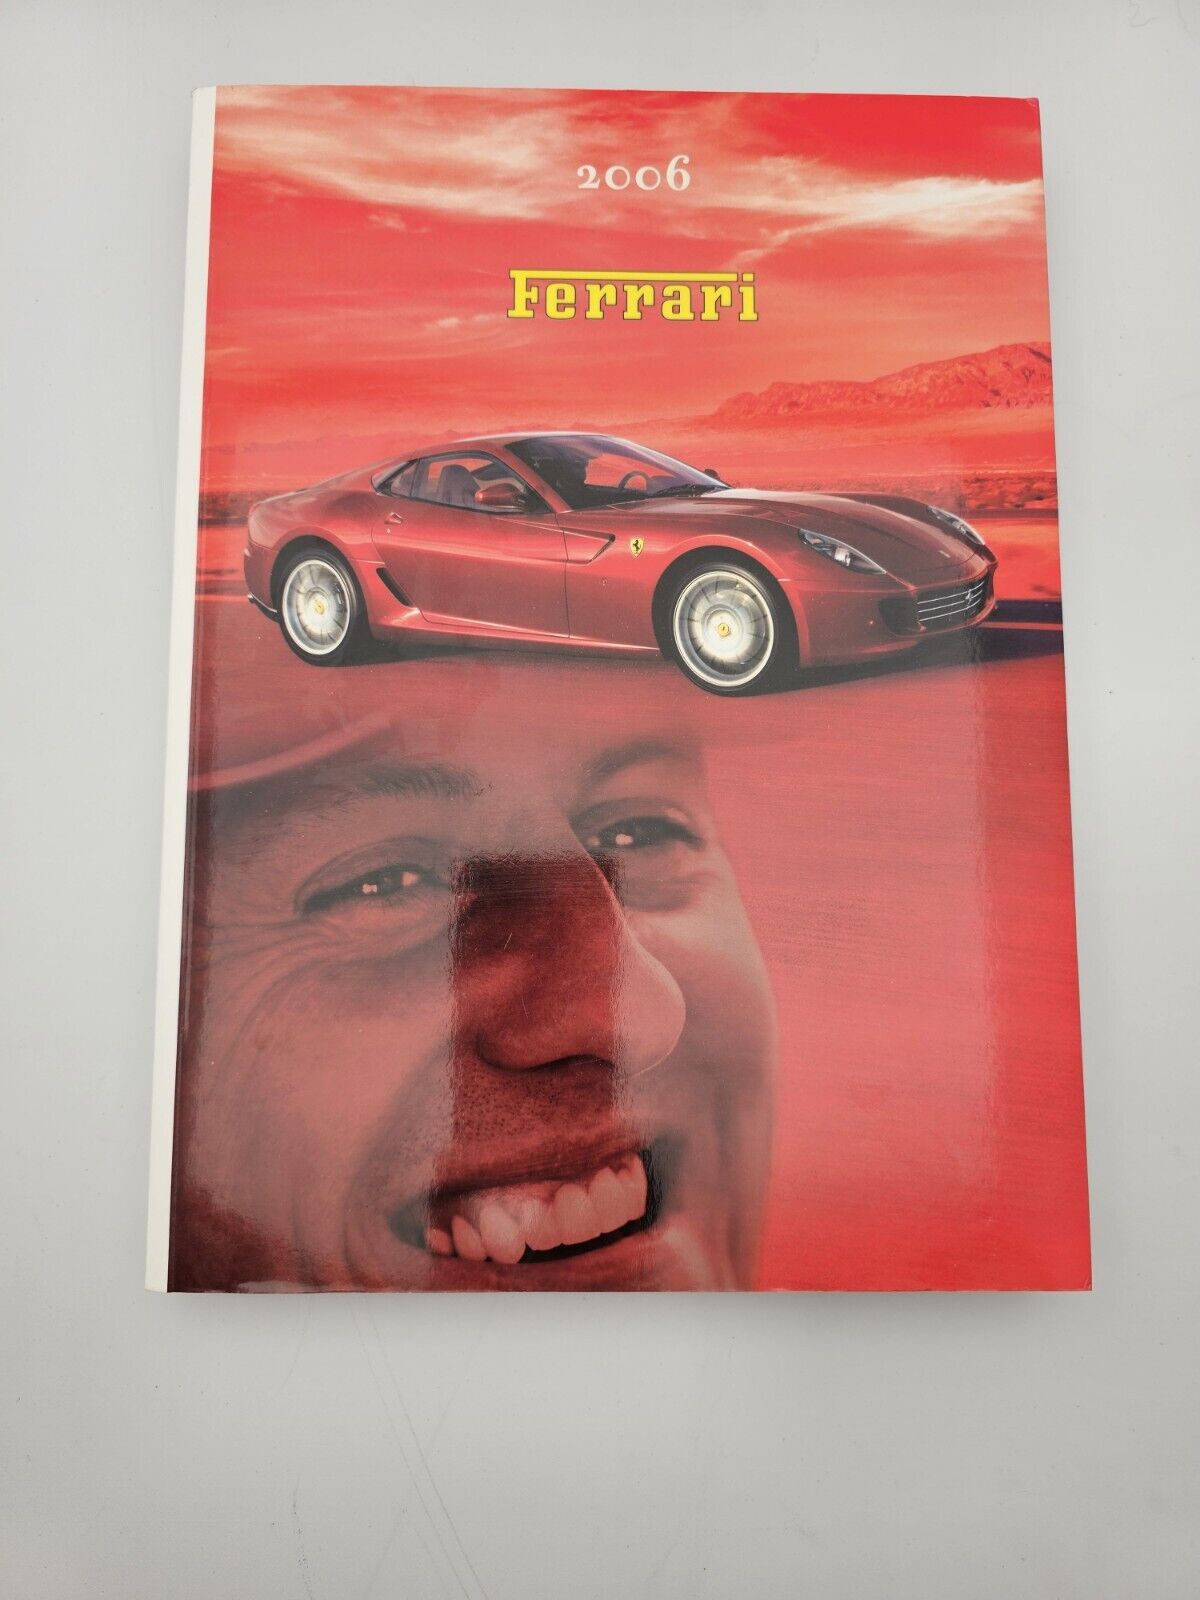 2006 FERRARI YEARBOOK Annuario Formula 1 Michael Schumacher Felipe Massa Inglese